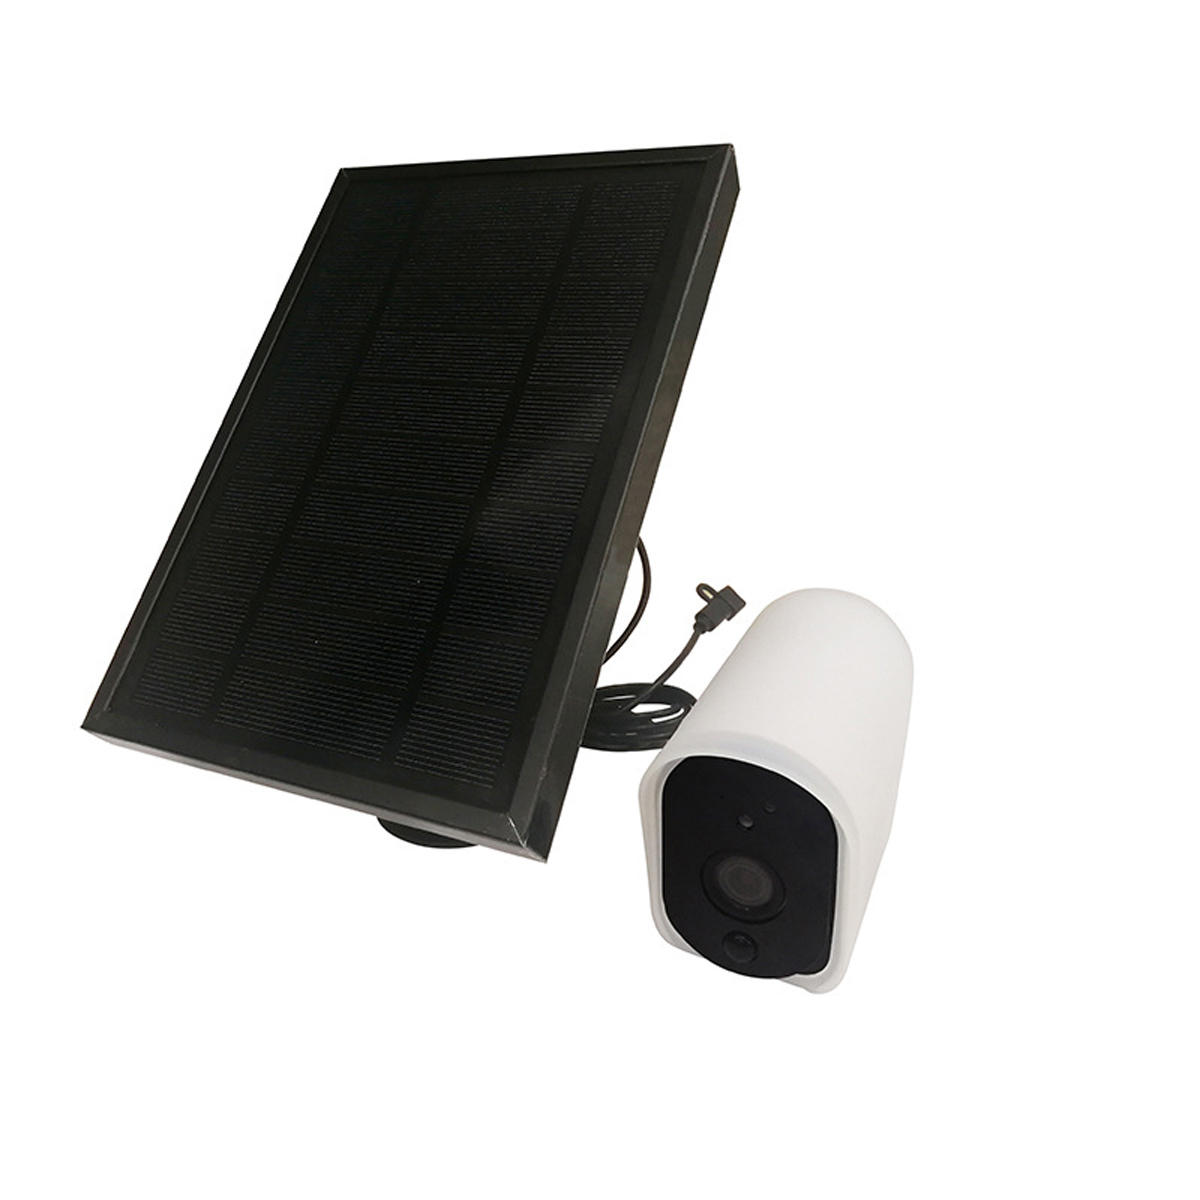 HD 1080P Wireless wasserdichte Sicherheit WiFi IP-Kamera wiederaufladbare Batterie Kamera Solar Panel